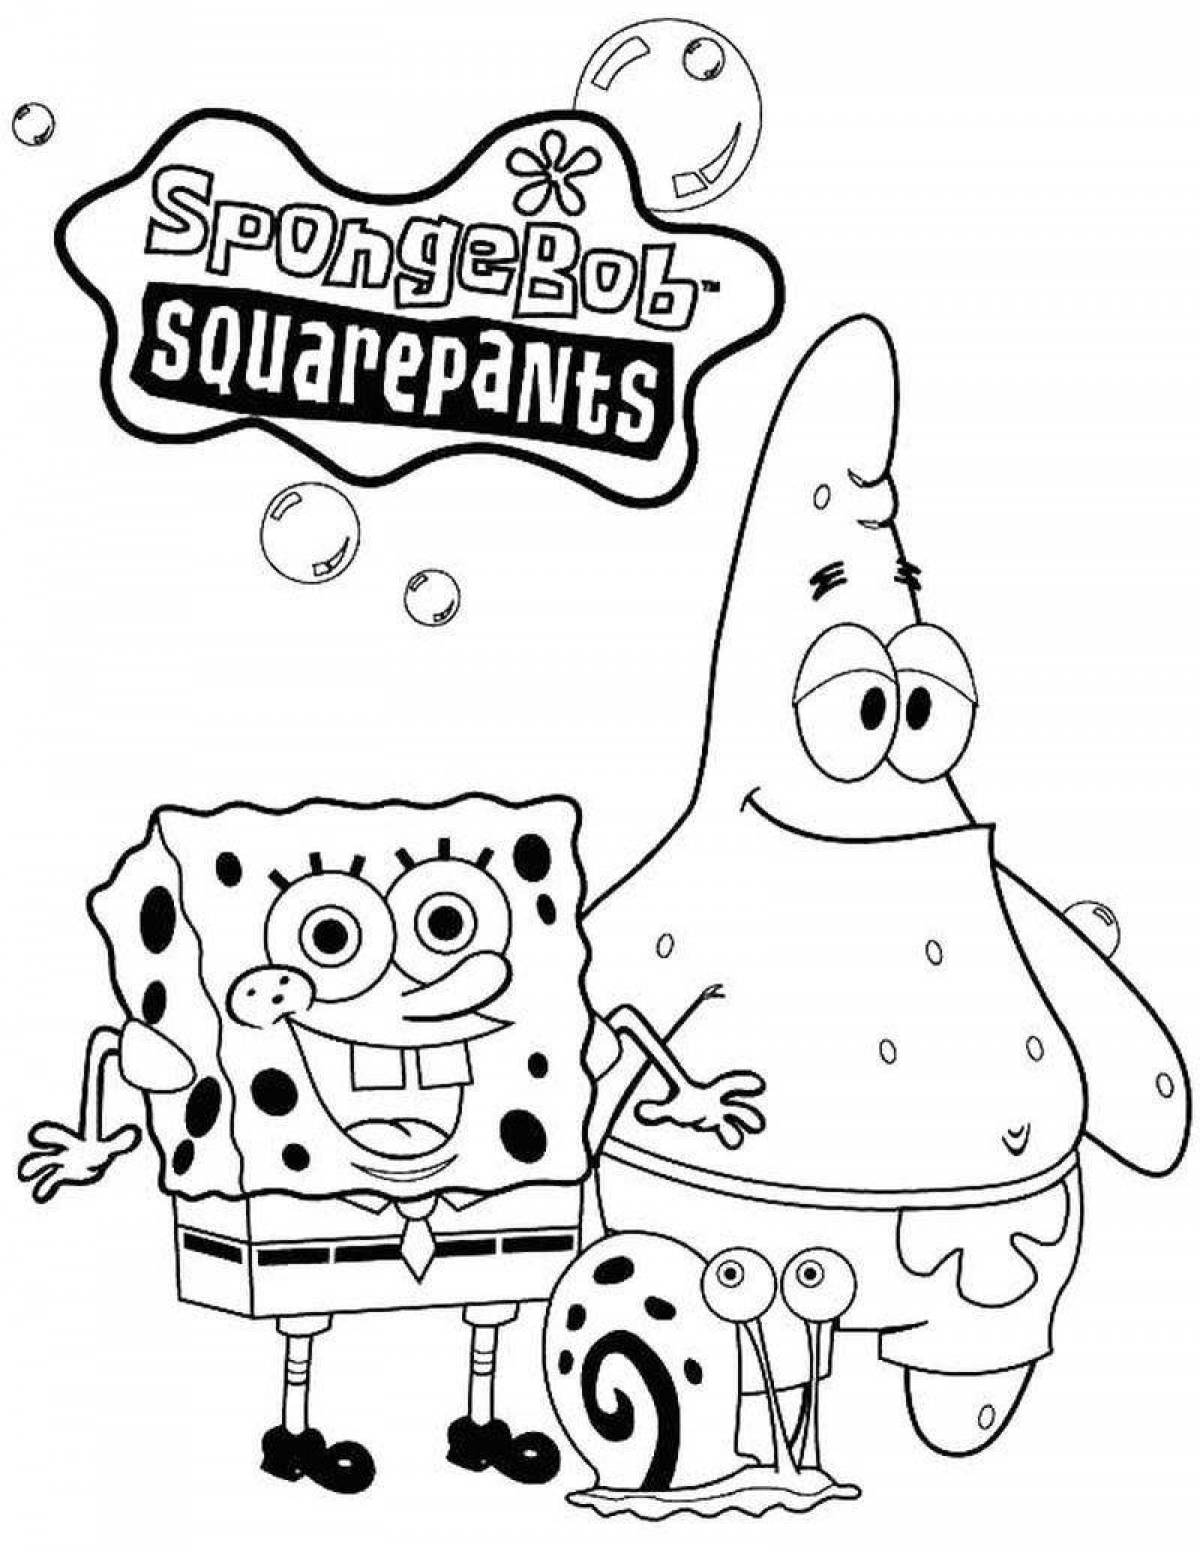 Fun coloring spongebob